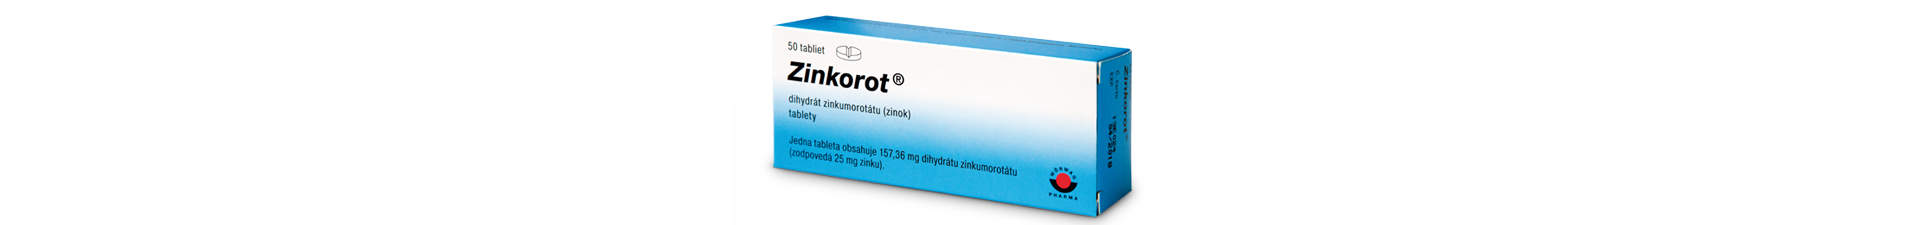 Zinkorot - zinok v tabletách, cena, pre deti, účinky, 25mg, dávkovanie, denná dávka